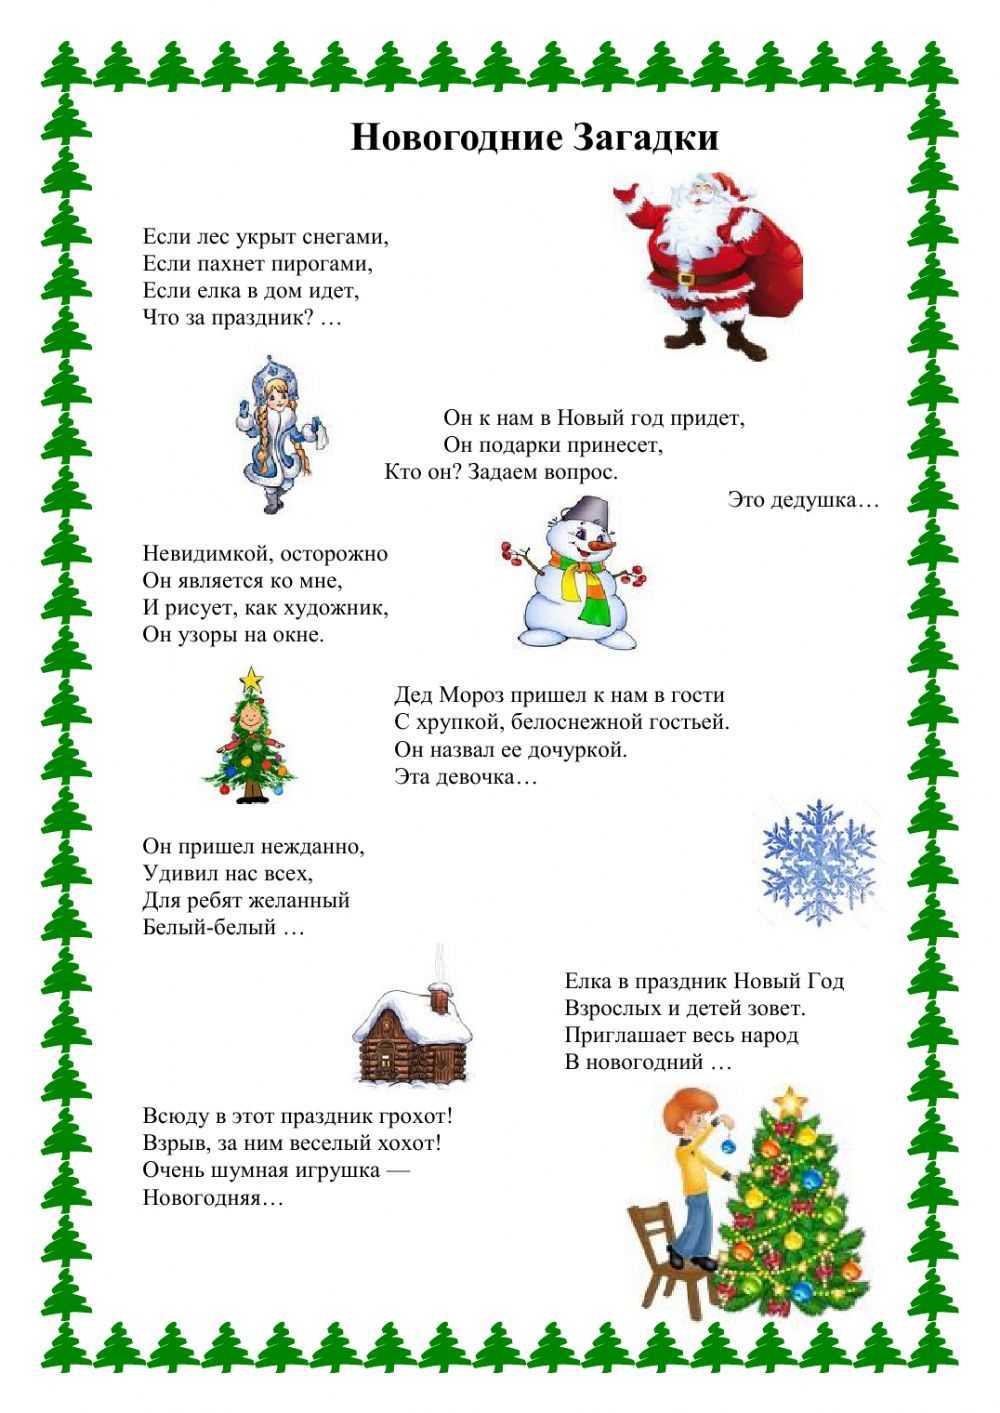 Сложные загадки на новый год на логику с ответами и подвохом для детей и взрослых: 60 веселых задачек для отгадывания дома, на утренниках и новогодних корпоративах / mama66.ru